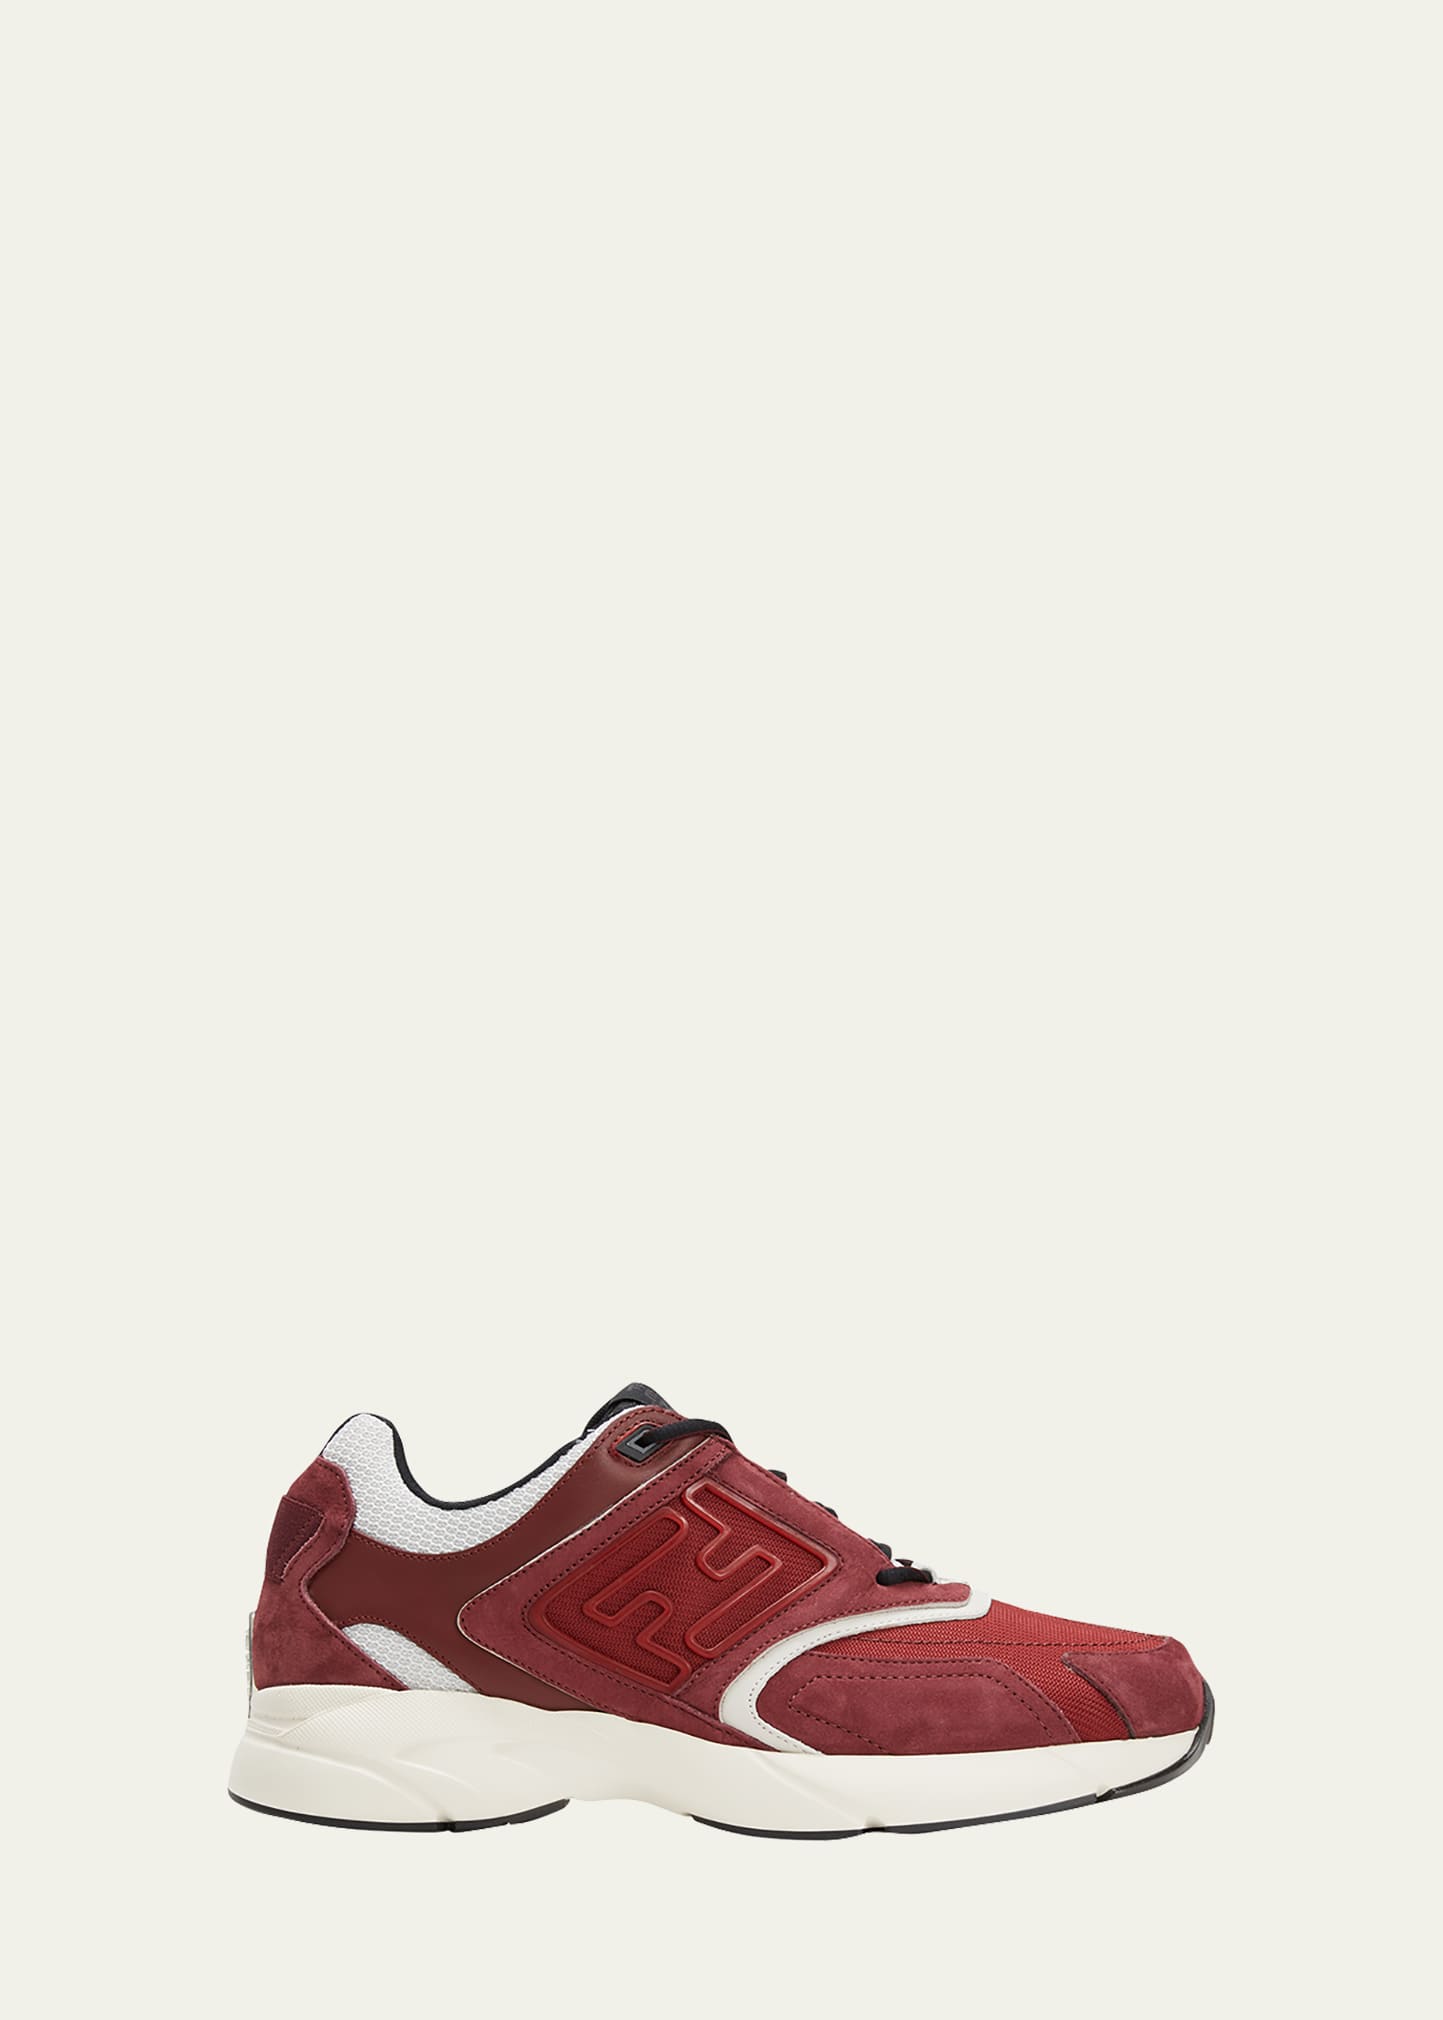 Fendi Men's Ff-logo Textile Runner Sneakers In Red/white